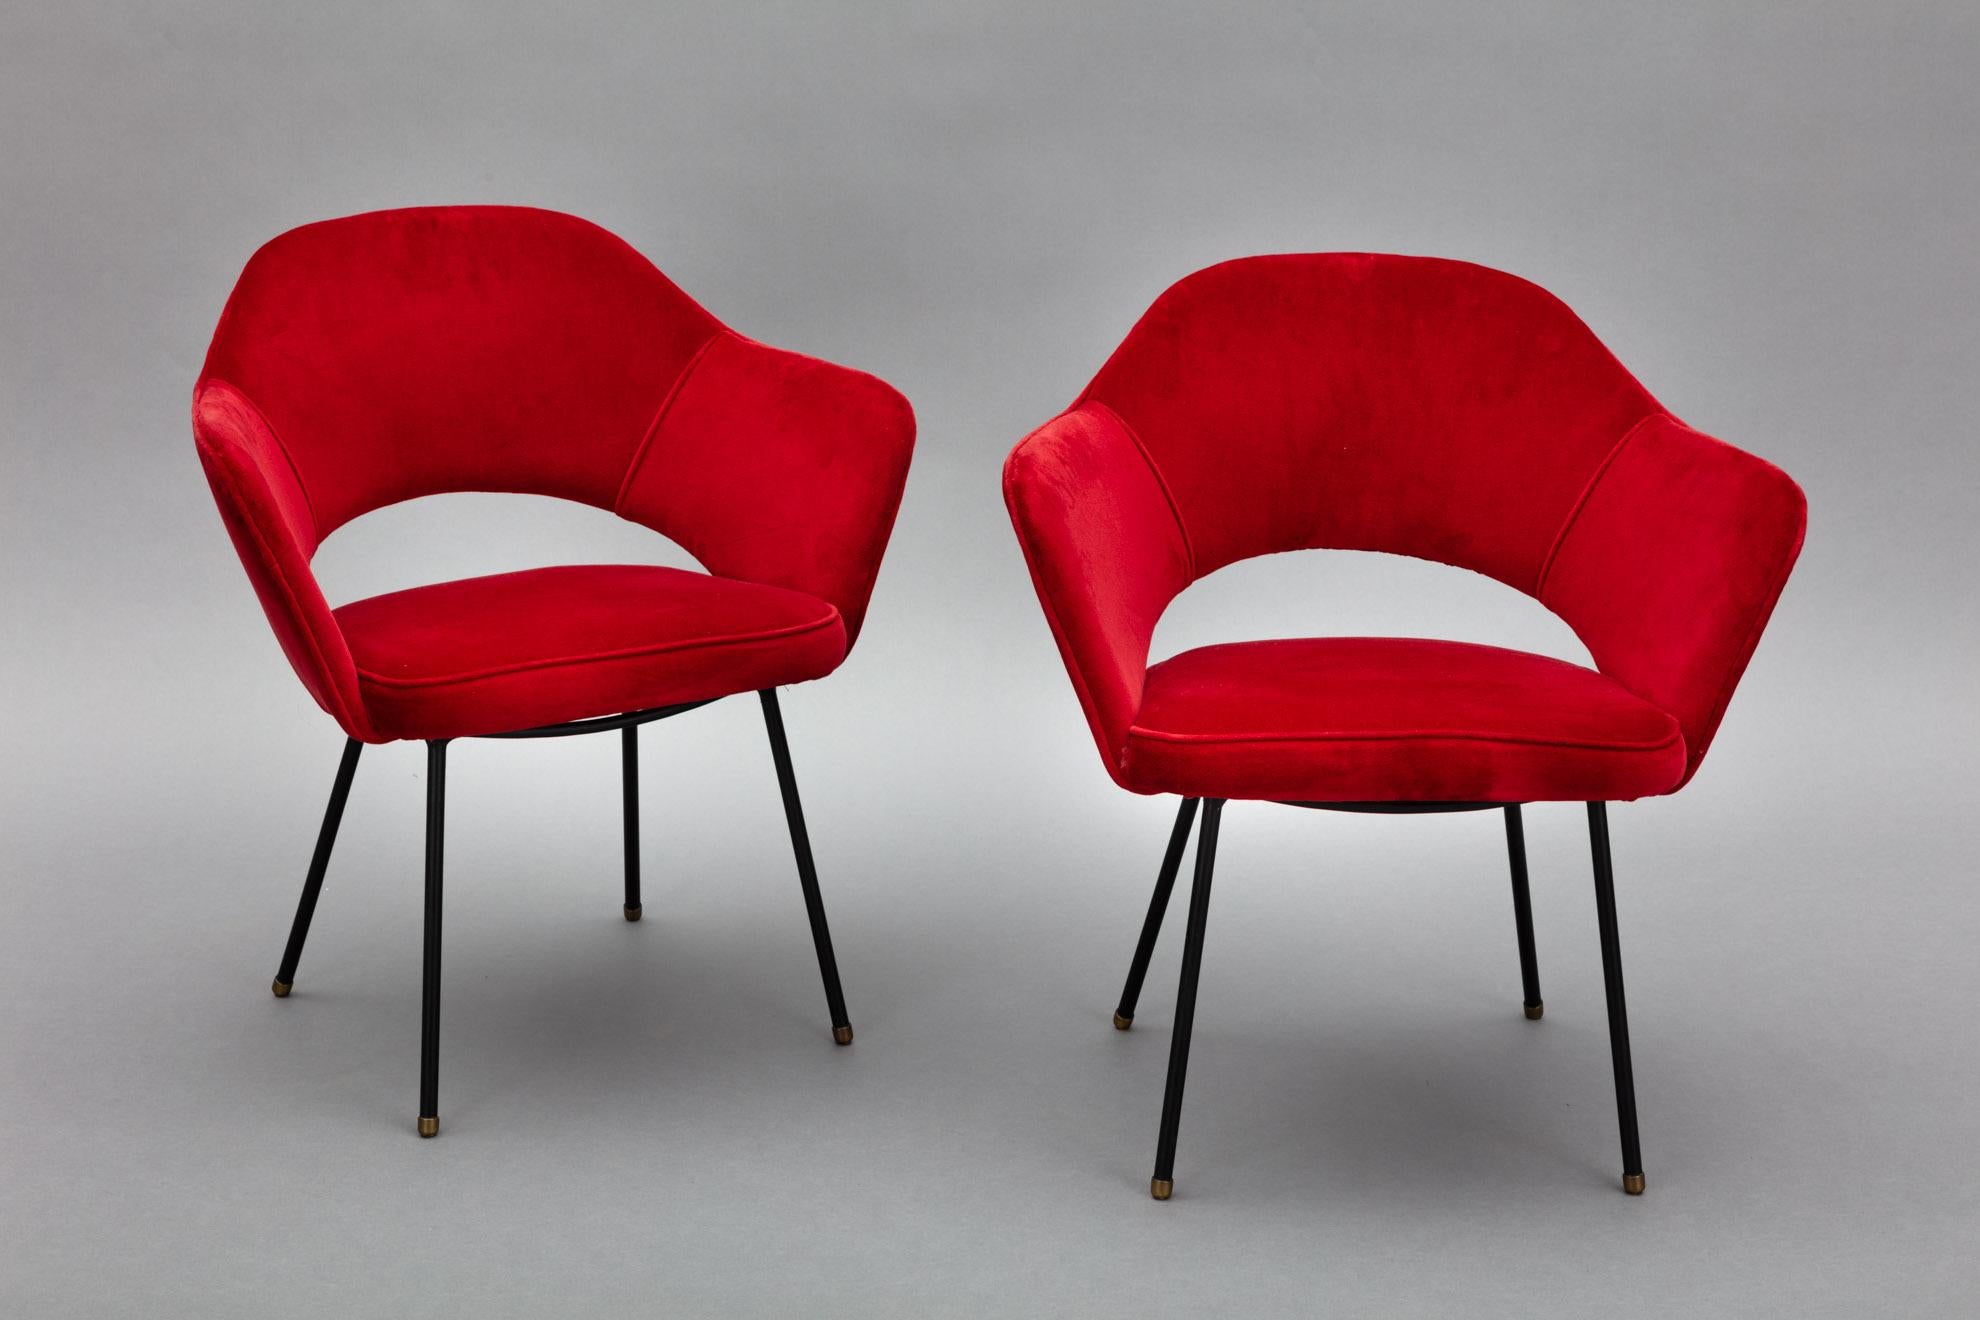 Dieses Paar Sessel aus den frühen 1950er Jahren von Hauner für Móveis Artesanal ist ein erstaunliches und sehr seltenes Set. Das Design dieser Sessel ähnelt dem des Executive Armchair von Saarinen, jedoch mit dem einzigartigen Hauner/Brasil-Twist.